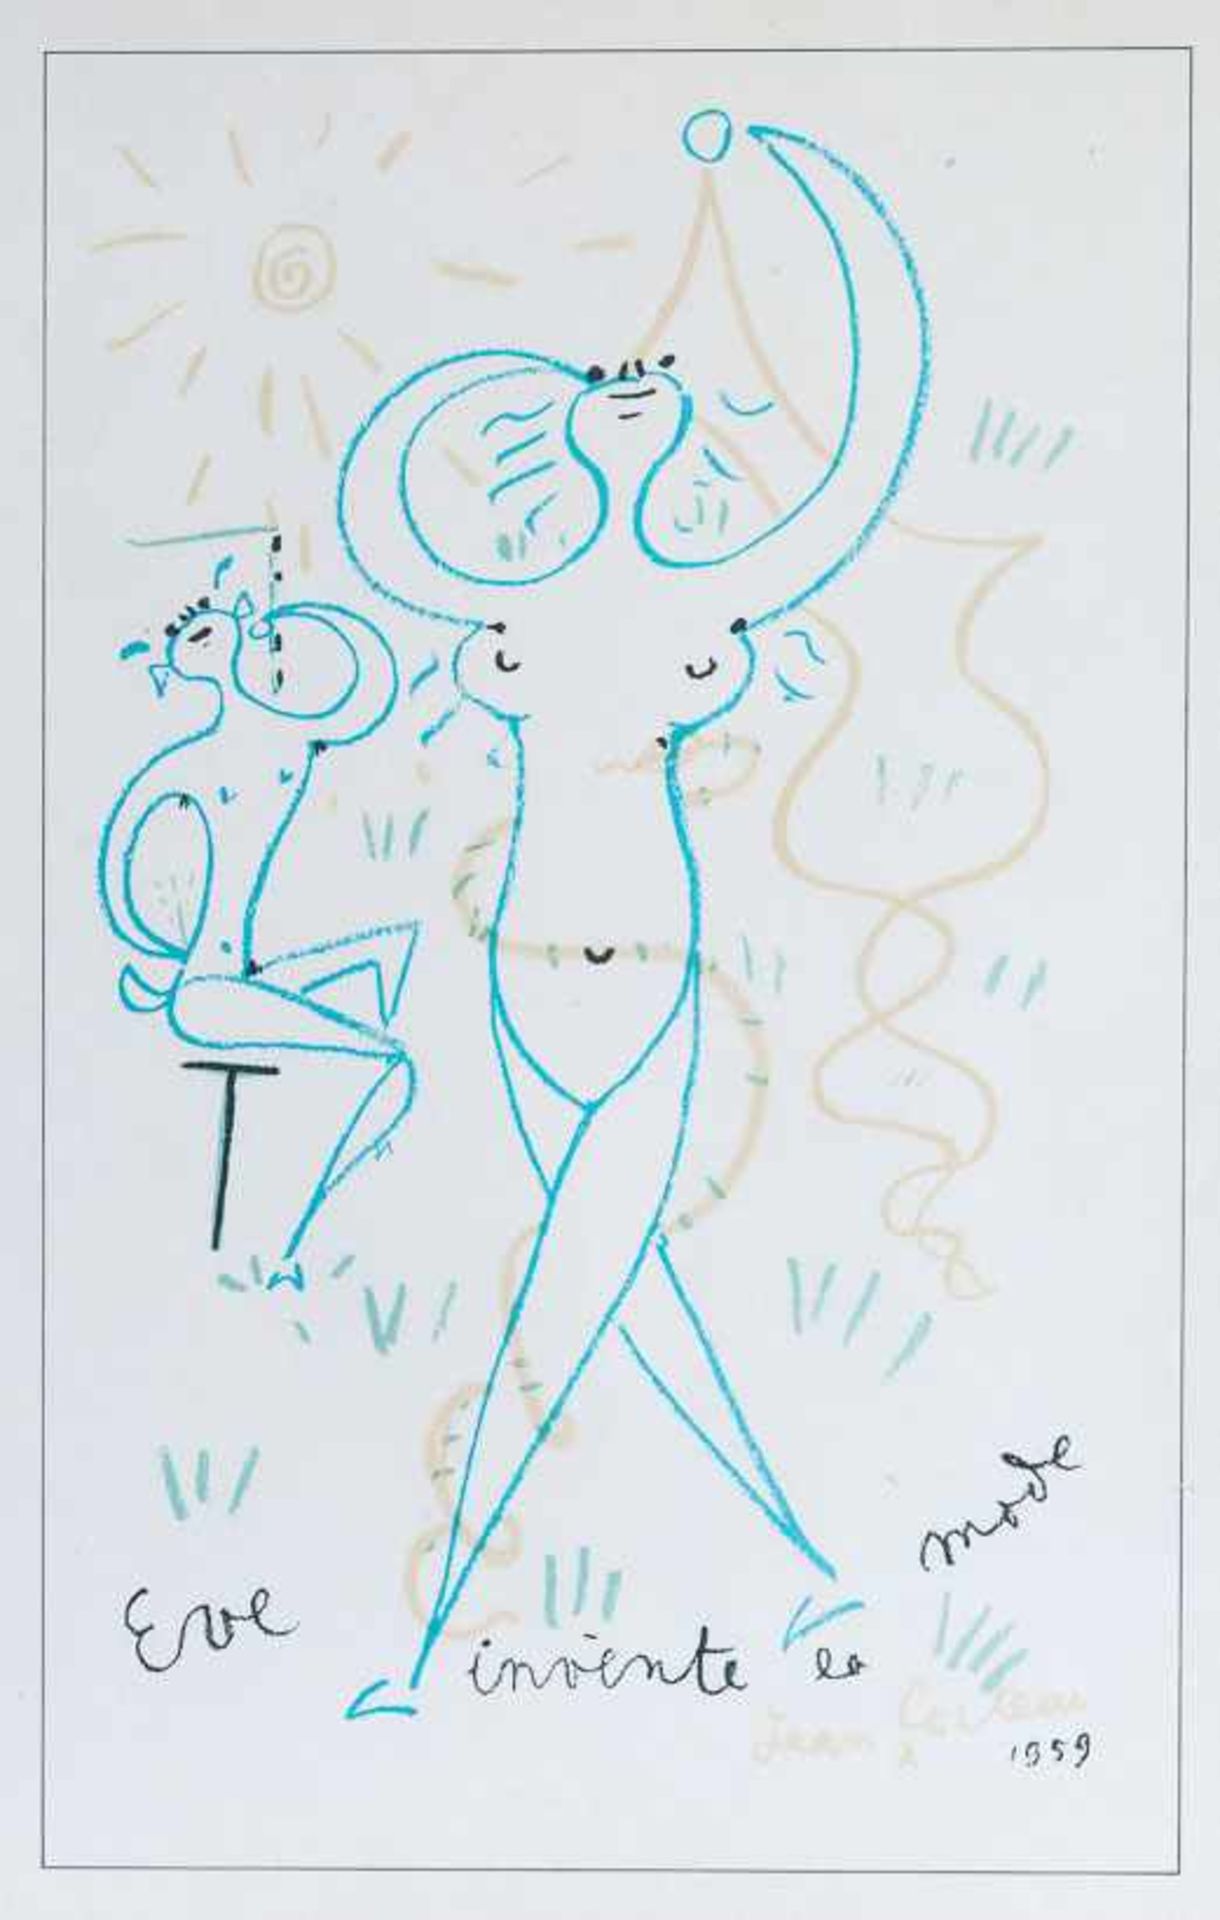 Cocteau, Jean (Maisons-Laffitte bei Paris, Milly-la-Forêt bei Paris 1889-1963) "Eve invente la